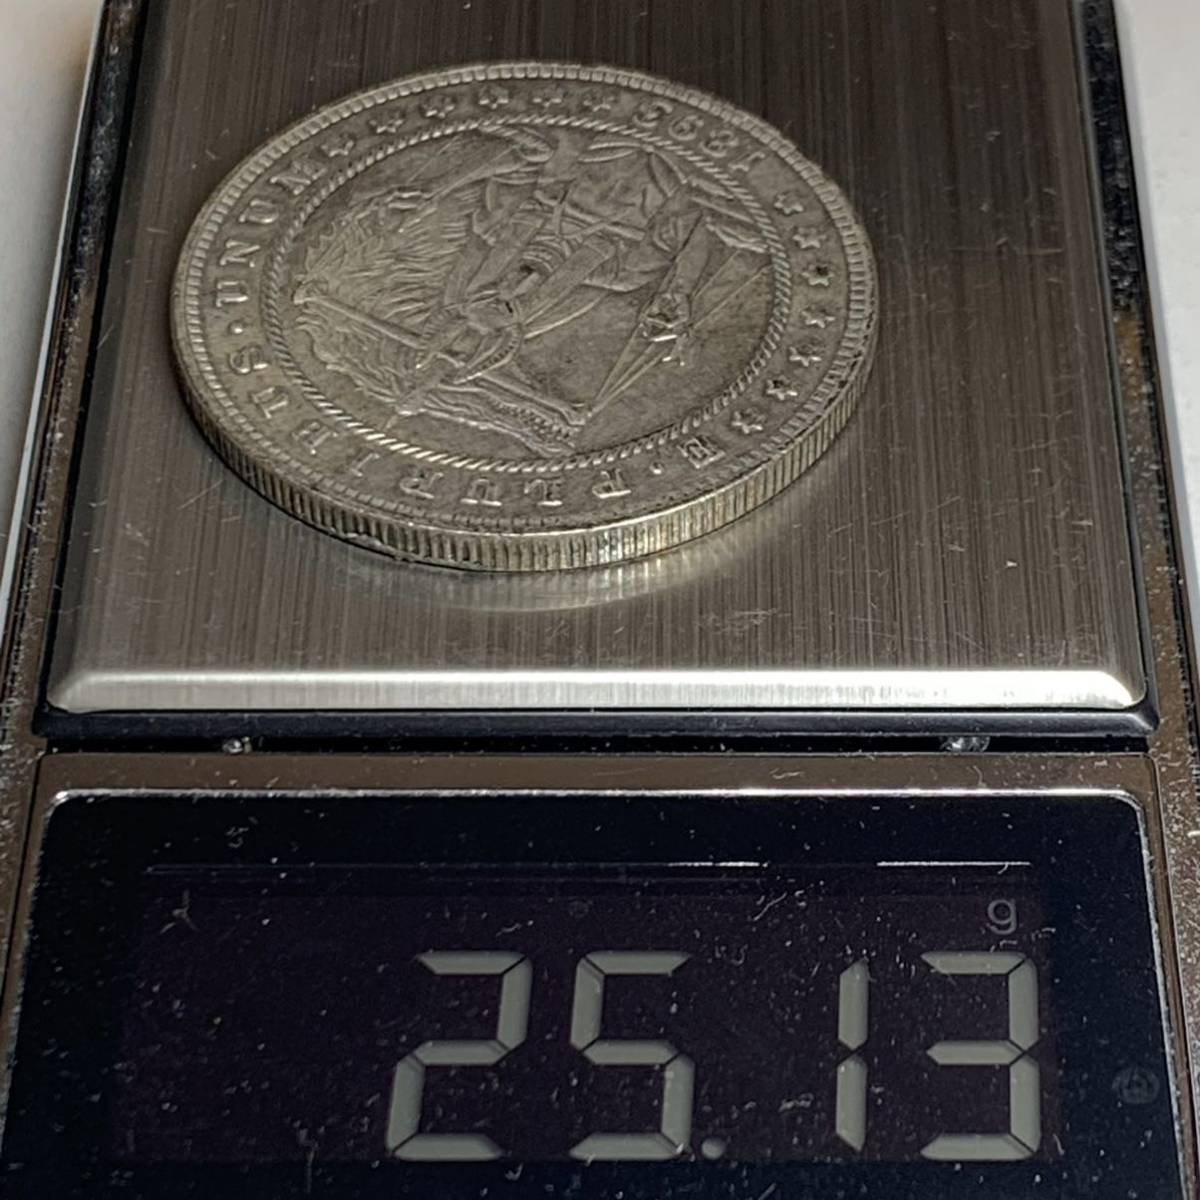 WX876流浪幣 エジプト 天秤狼 天眼 鷹紋 外国硬貨 貿易銀 海外古銭 コレクションコイン 貨幣 重さ約25g_画像6